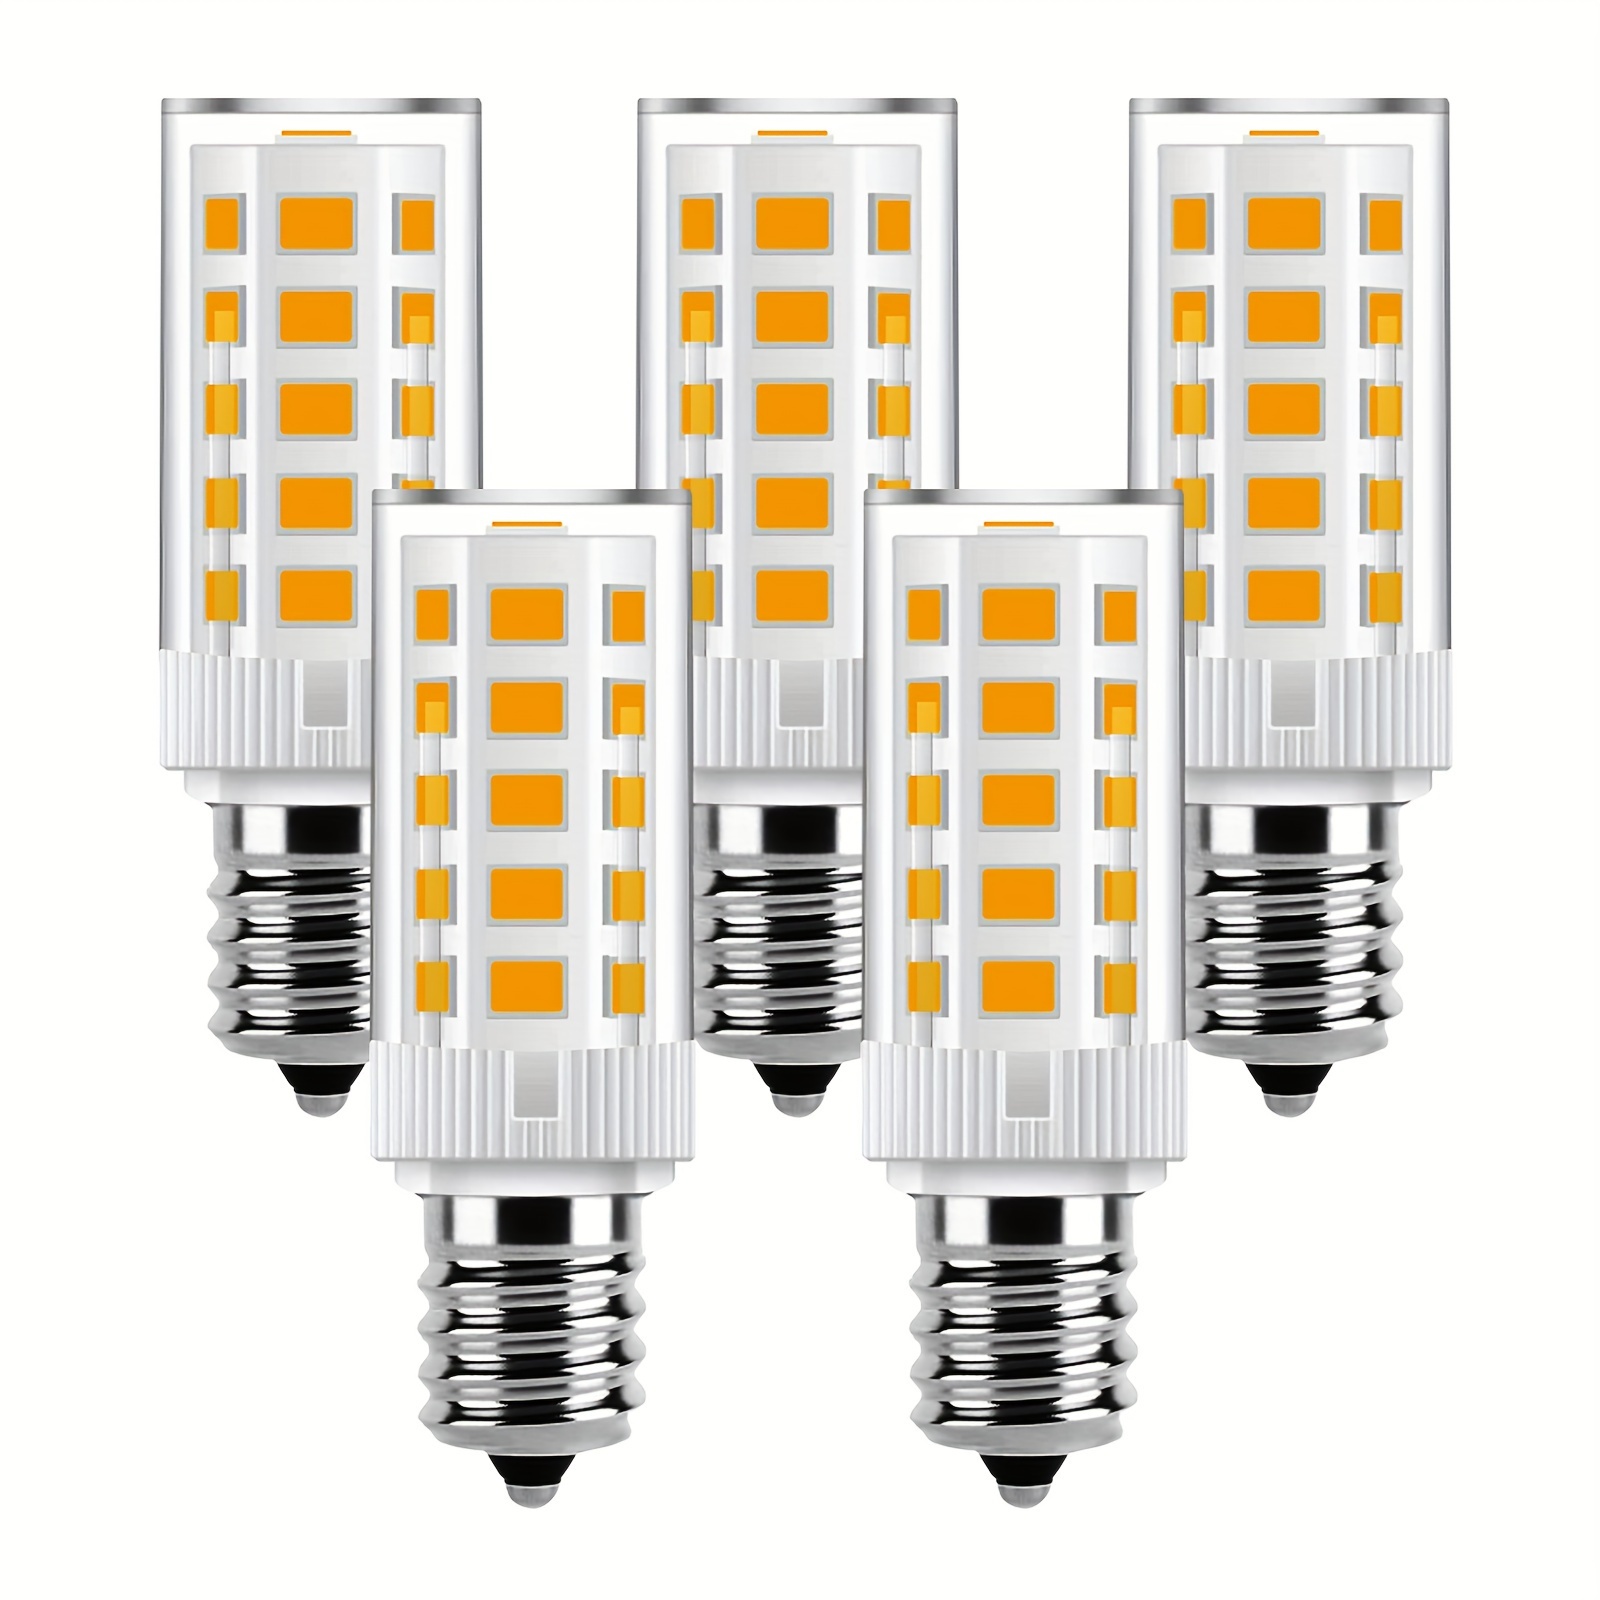 Mini bombillas LED E12 para uso doméstico, lámpara de ahorro de